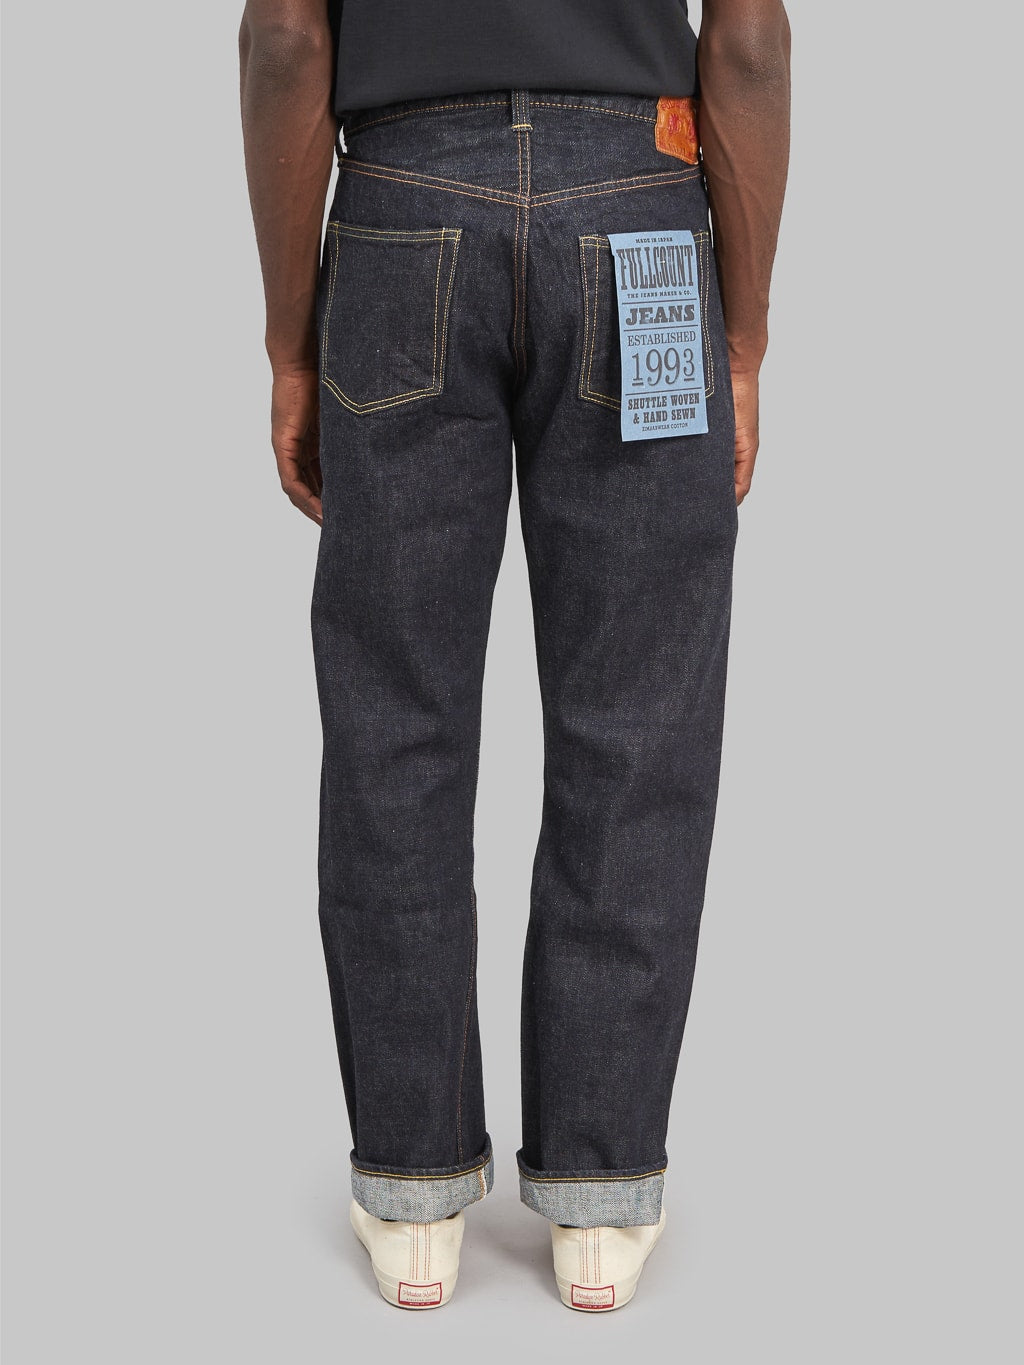 Fullcount 1101XXW regular Straight selvedge Jeans back fit